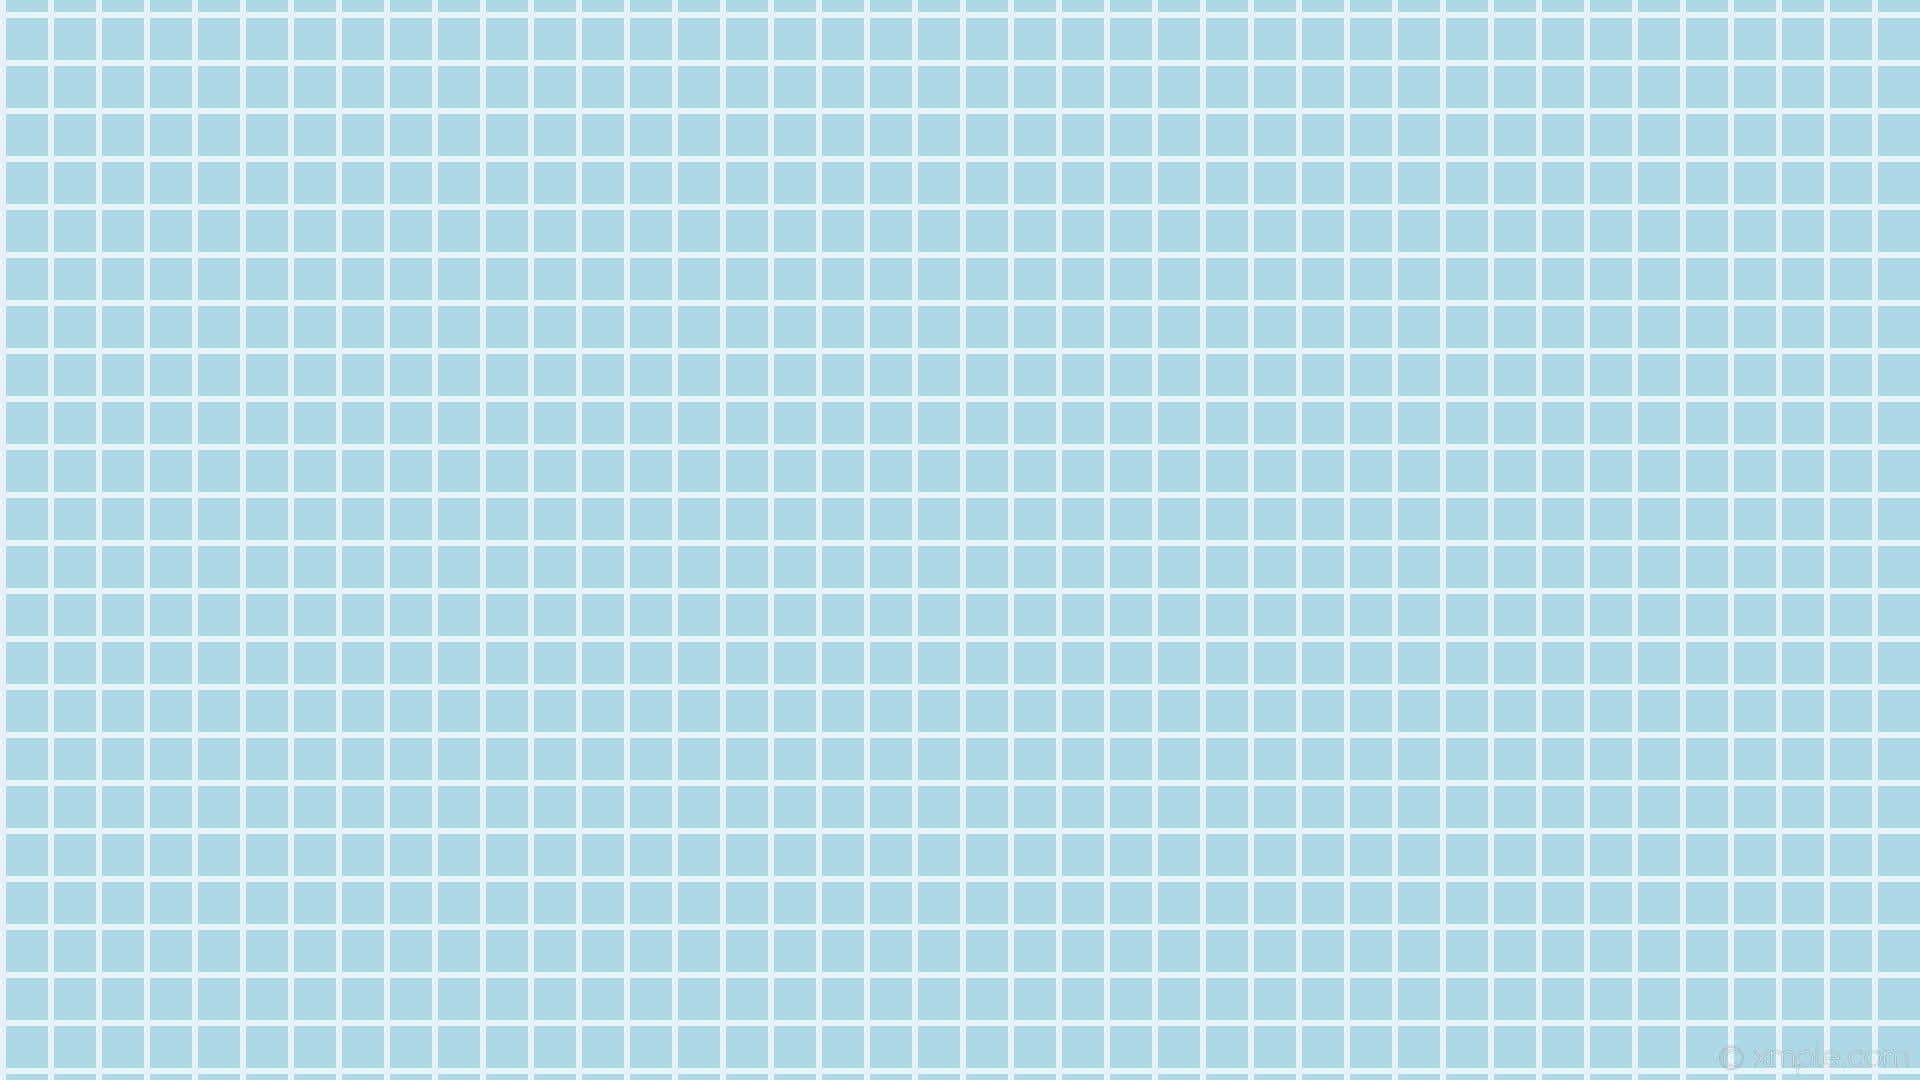 Backgrounduppfriska Ditt Arbetsutrymme Med Denna Ljusblå Estetiska Bakgrundsbild För Laptop. Wallpaper